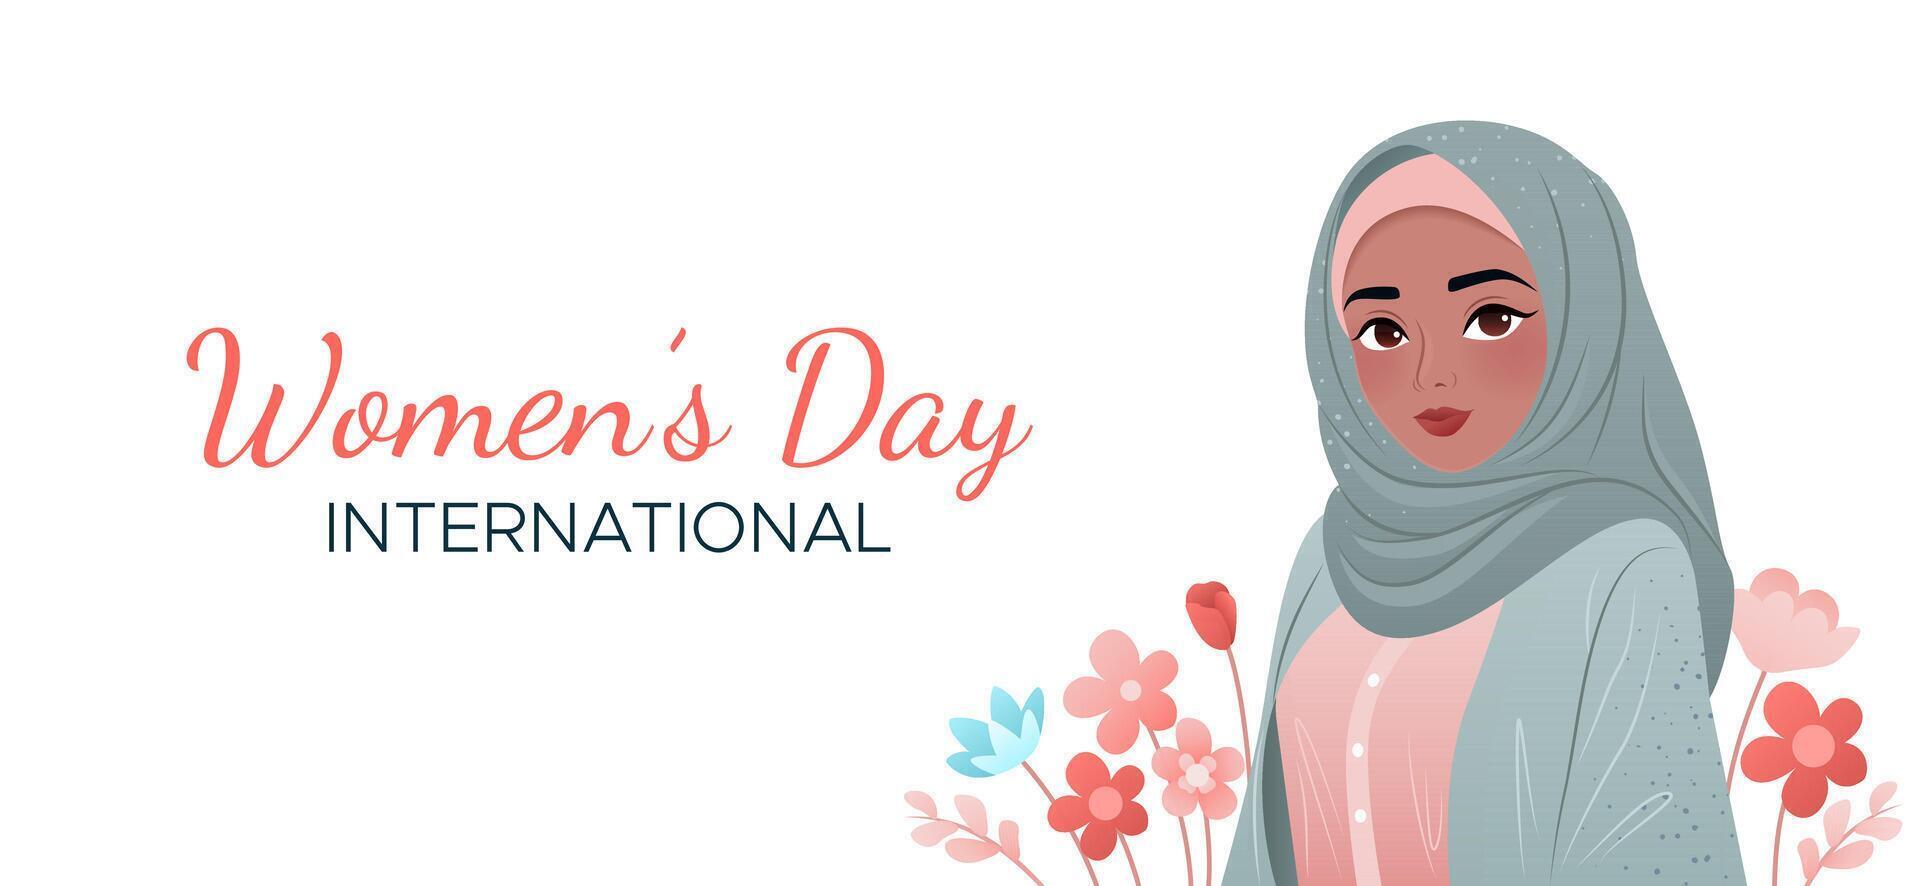 internacional De las mujeres día. 8 marzo bandera. retrato de musulmán mujer con flores joven niña en hiyab diseño para póster, cubrir, tarjeta, campaña, social medios de comunicación correo, tarjeta postal. vector ilustración.